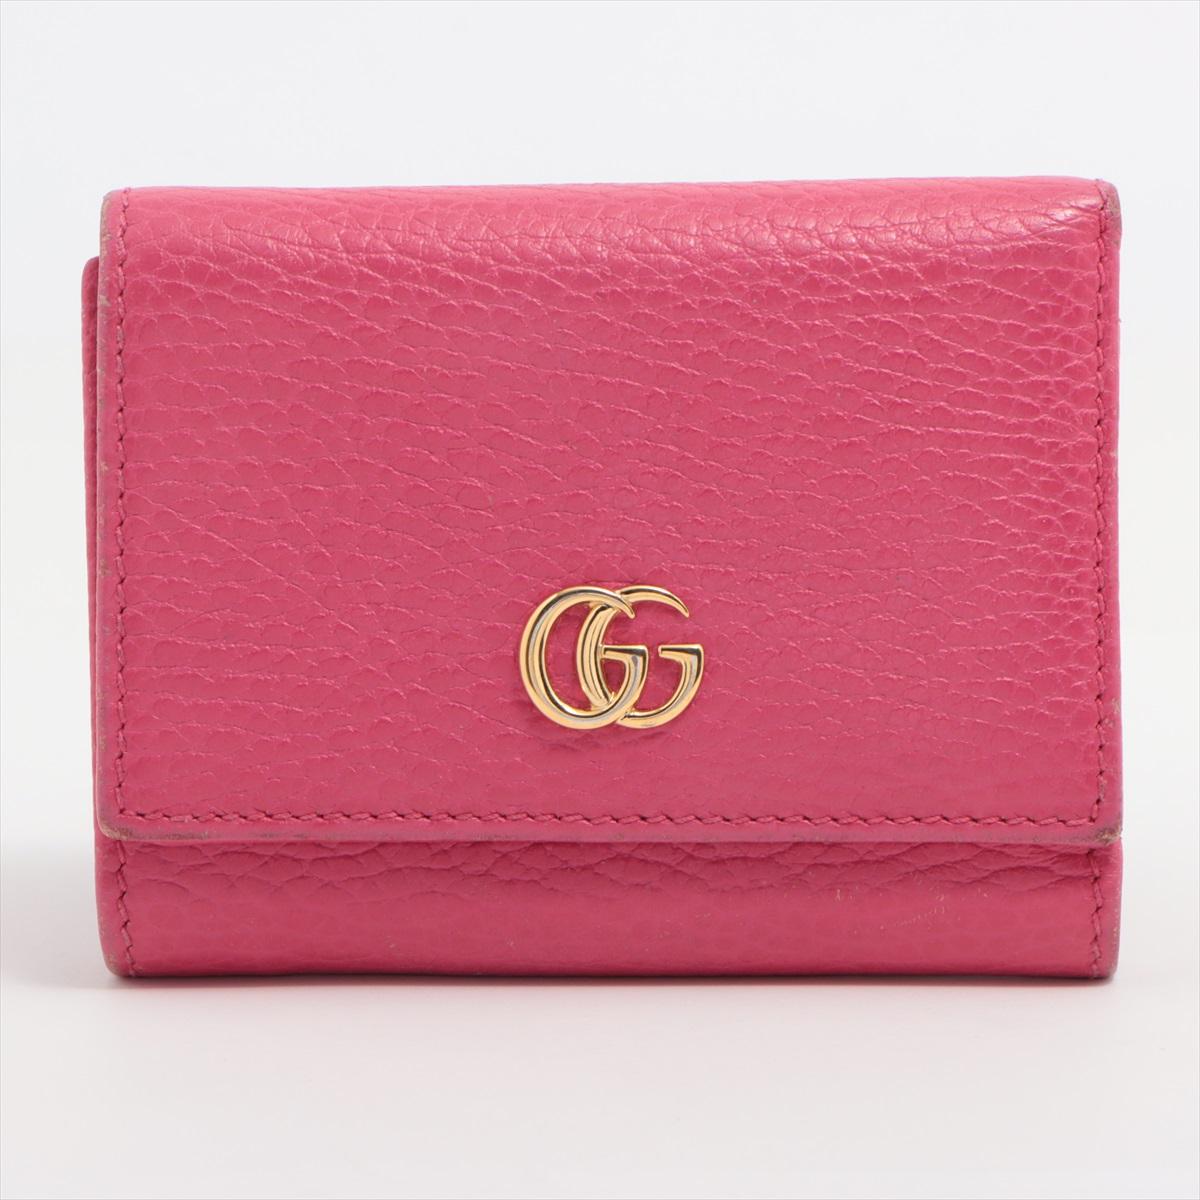 Die Gucci GG Marmont Leather Compact Wallet in Pink ist ein elegantes und kompaktes Accessoire, das Luxus und modernes Design nahtlos miteinander verbindet. Das sorgfältig aus Glattleder gefertigte Portemonnaie ist mit dem kultigen GG Marmont